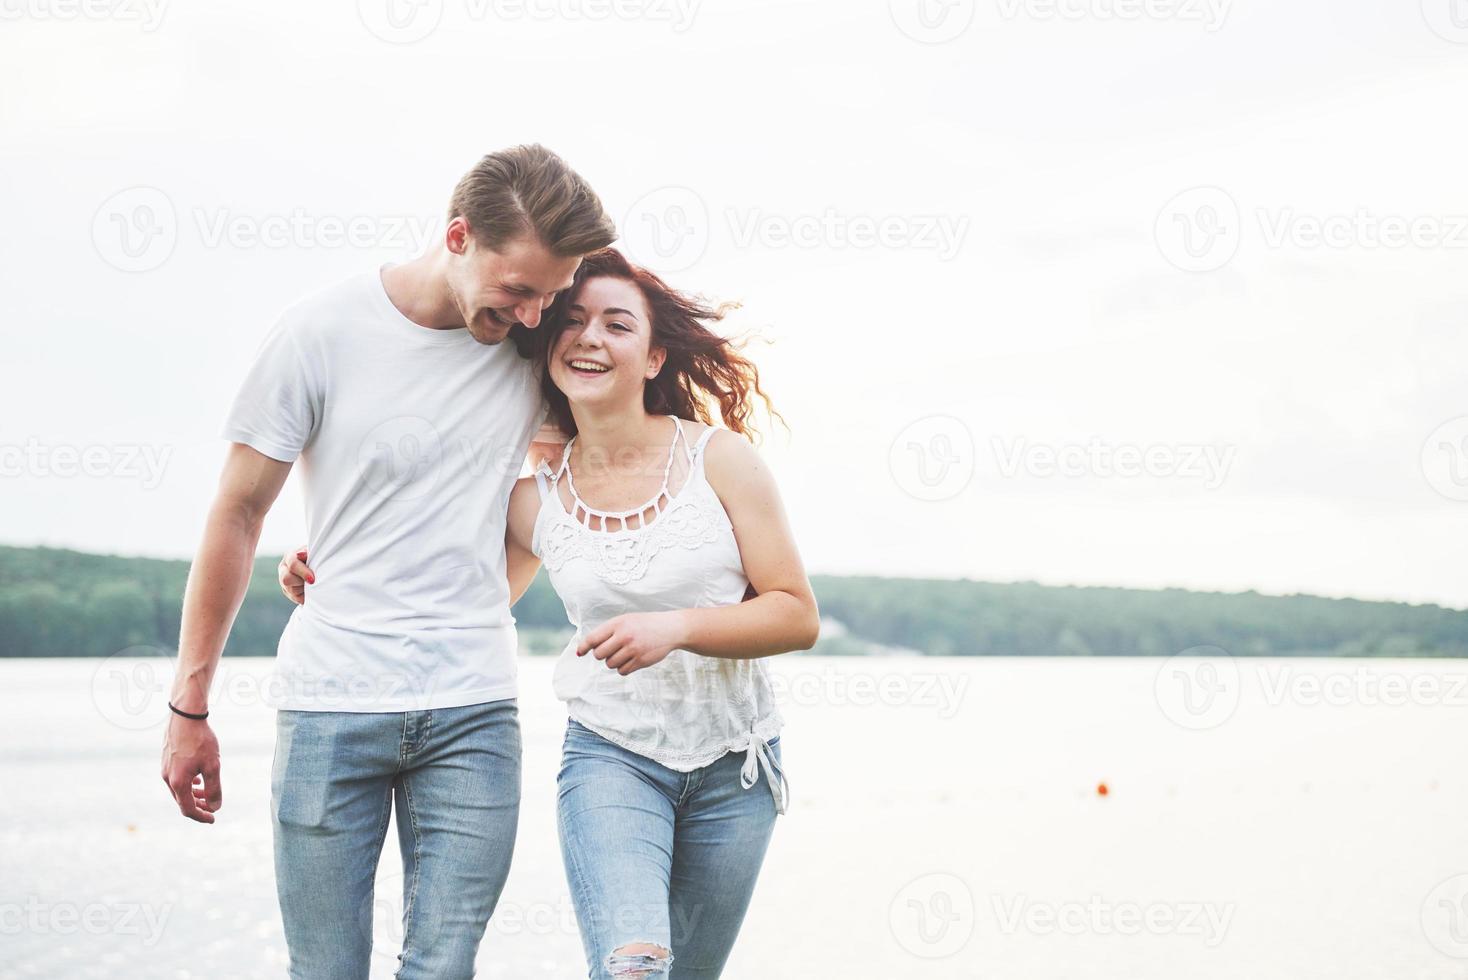 glückliches junges Paar, das einen einsamen Strand backriding genießt foto